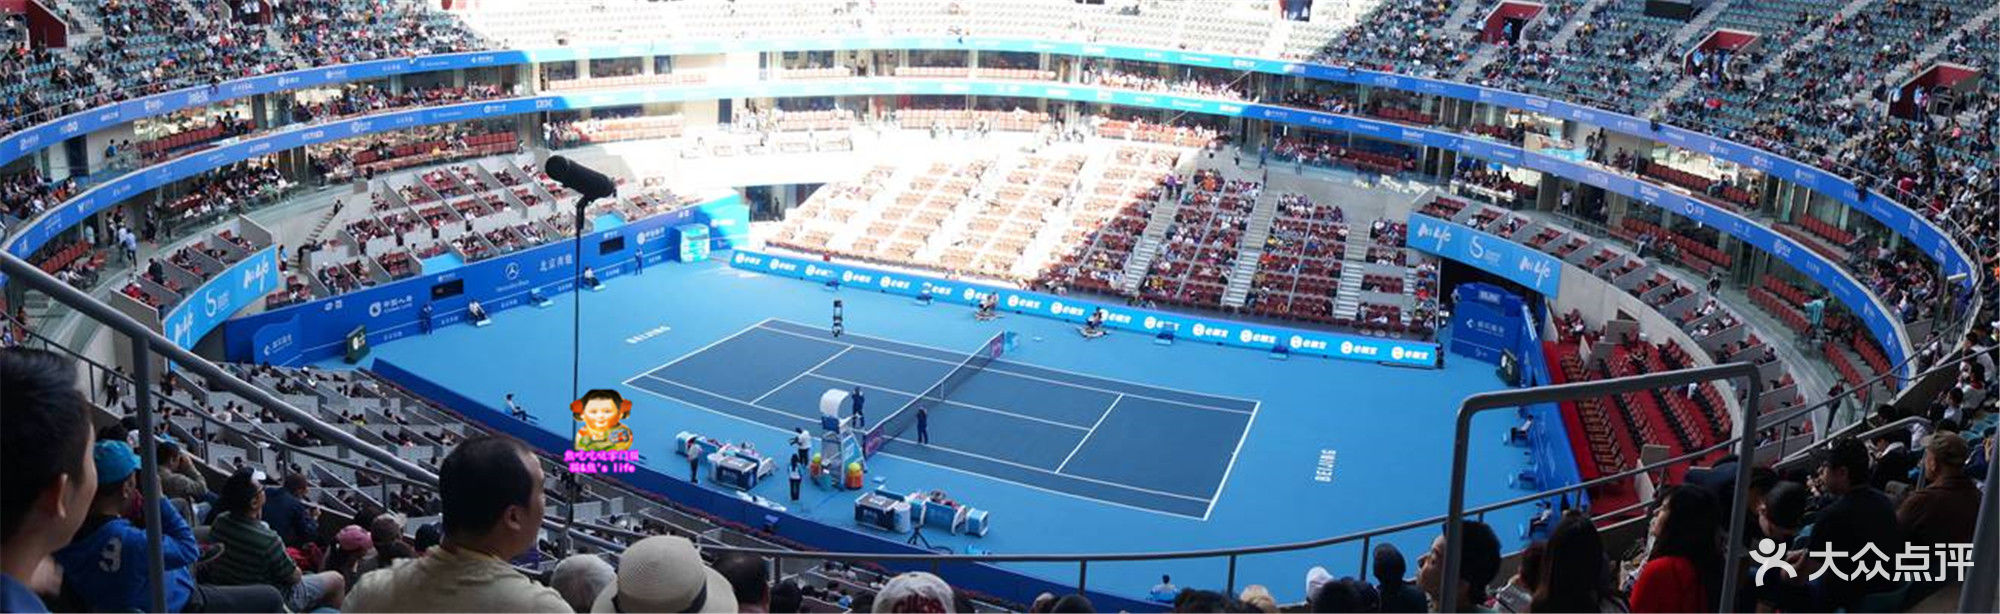 澳大利亚网球公开赛钻石球场_钻石球场和莲花球场_2015武汉网球公开赛程